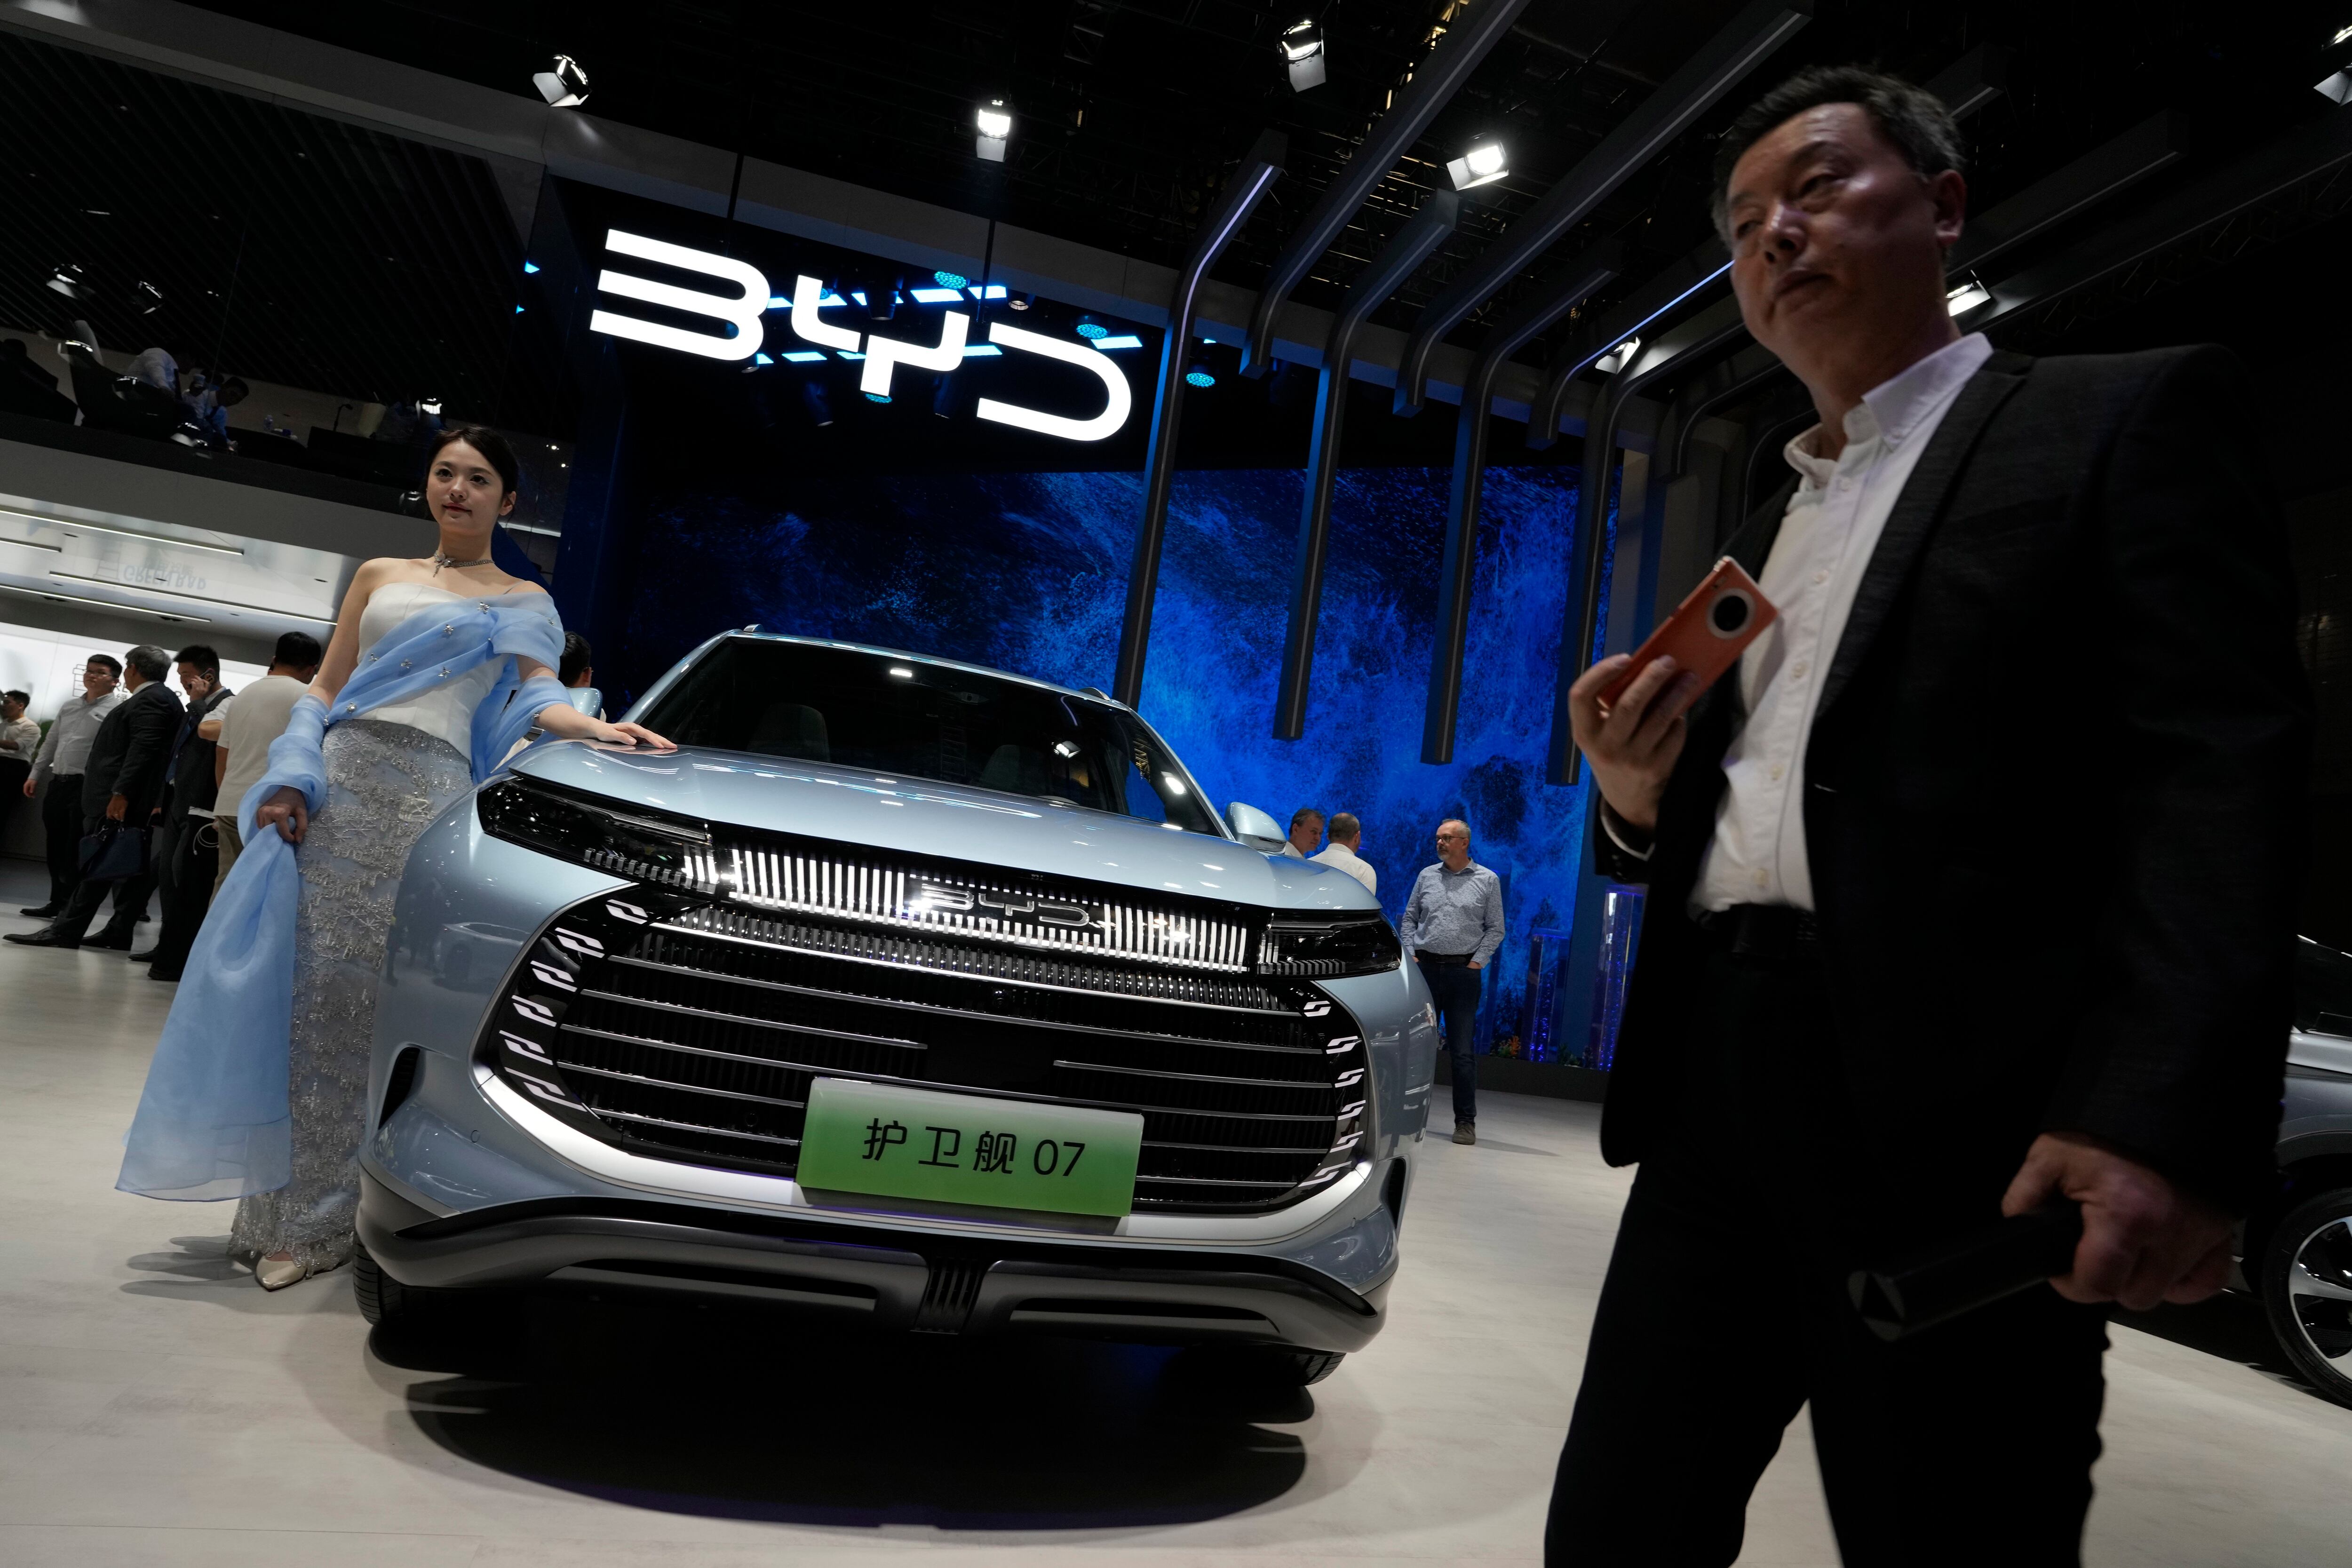 Un showroom de la automotriz china BYD (Build Your Dreams) principal fabricante mundial de vehículos eléctricos, posición sustentada en la producción china de baterías de litio, muy dependiente de materia prima importada (AP)